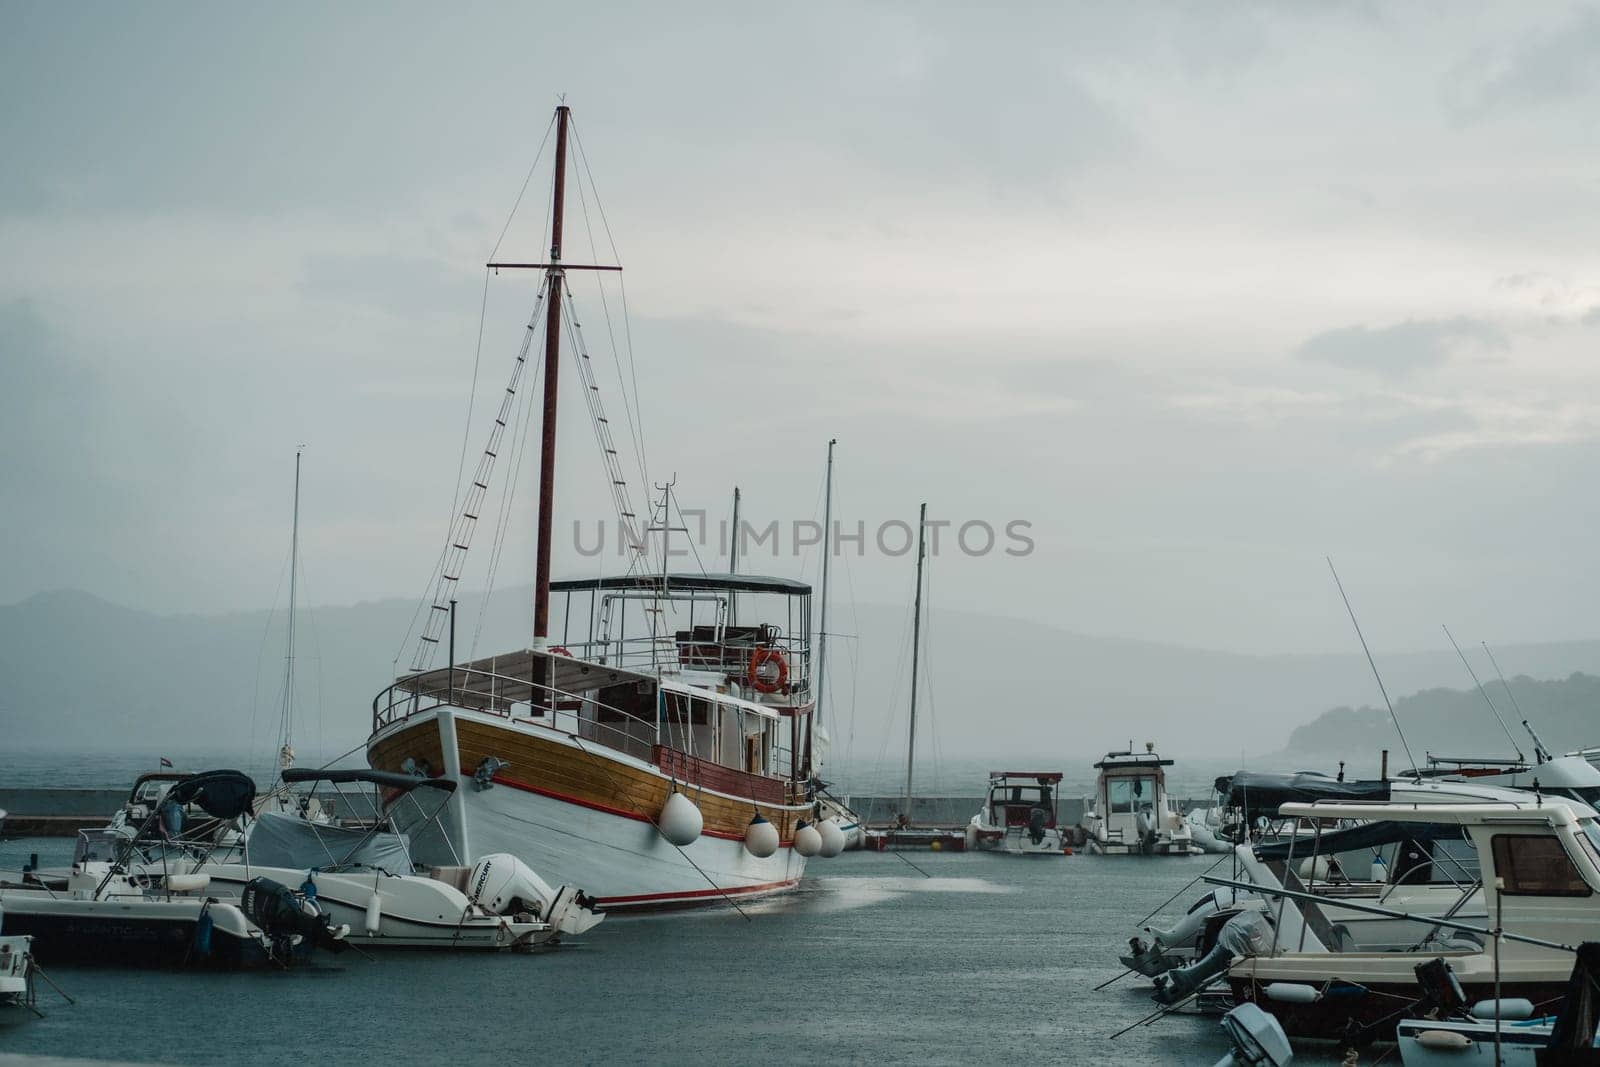 Sloop rigged sailboats moored to pier in yacht marina, Biograd na Moru of Croatia